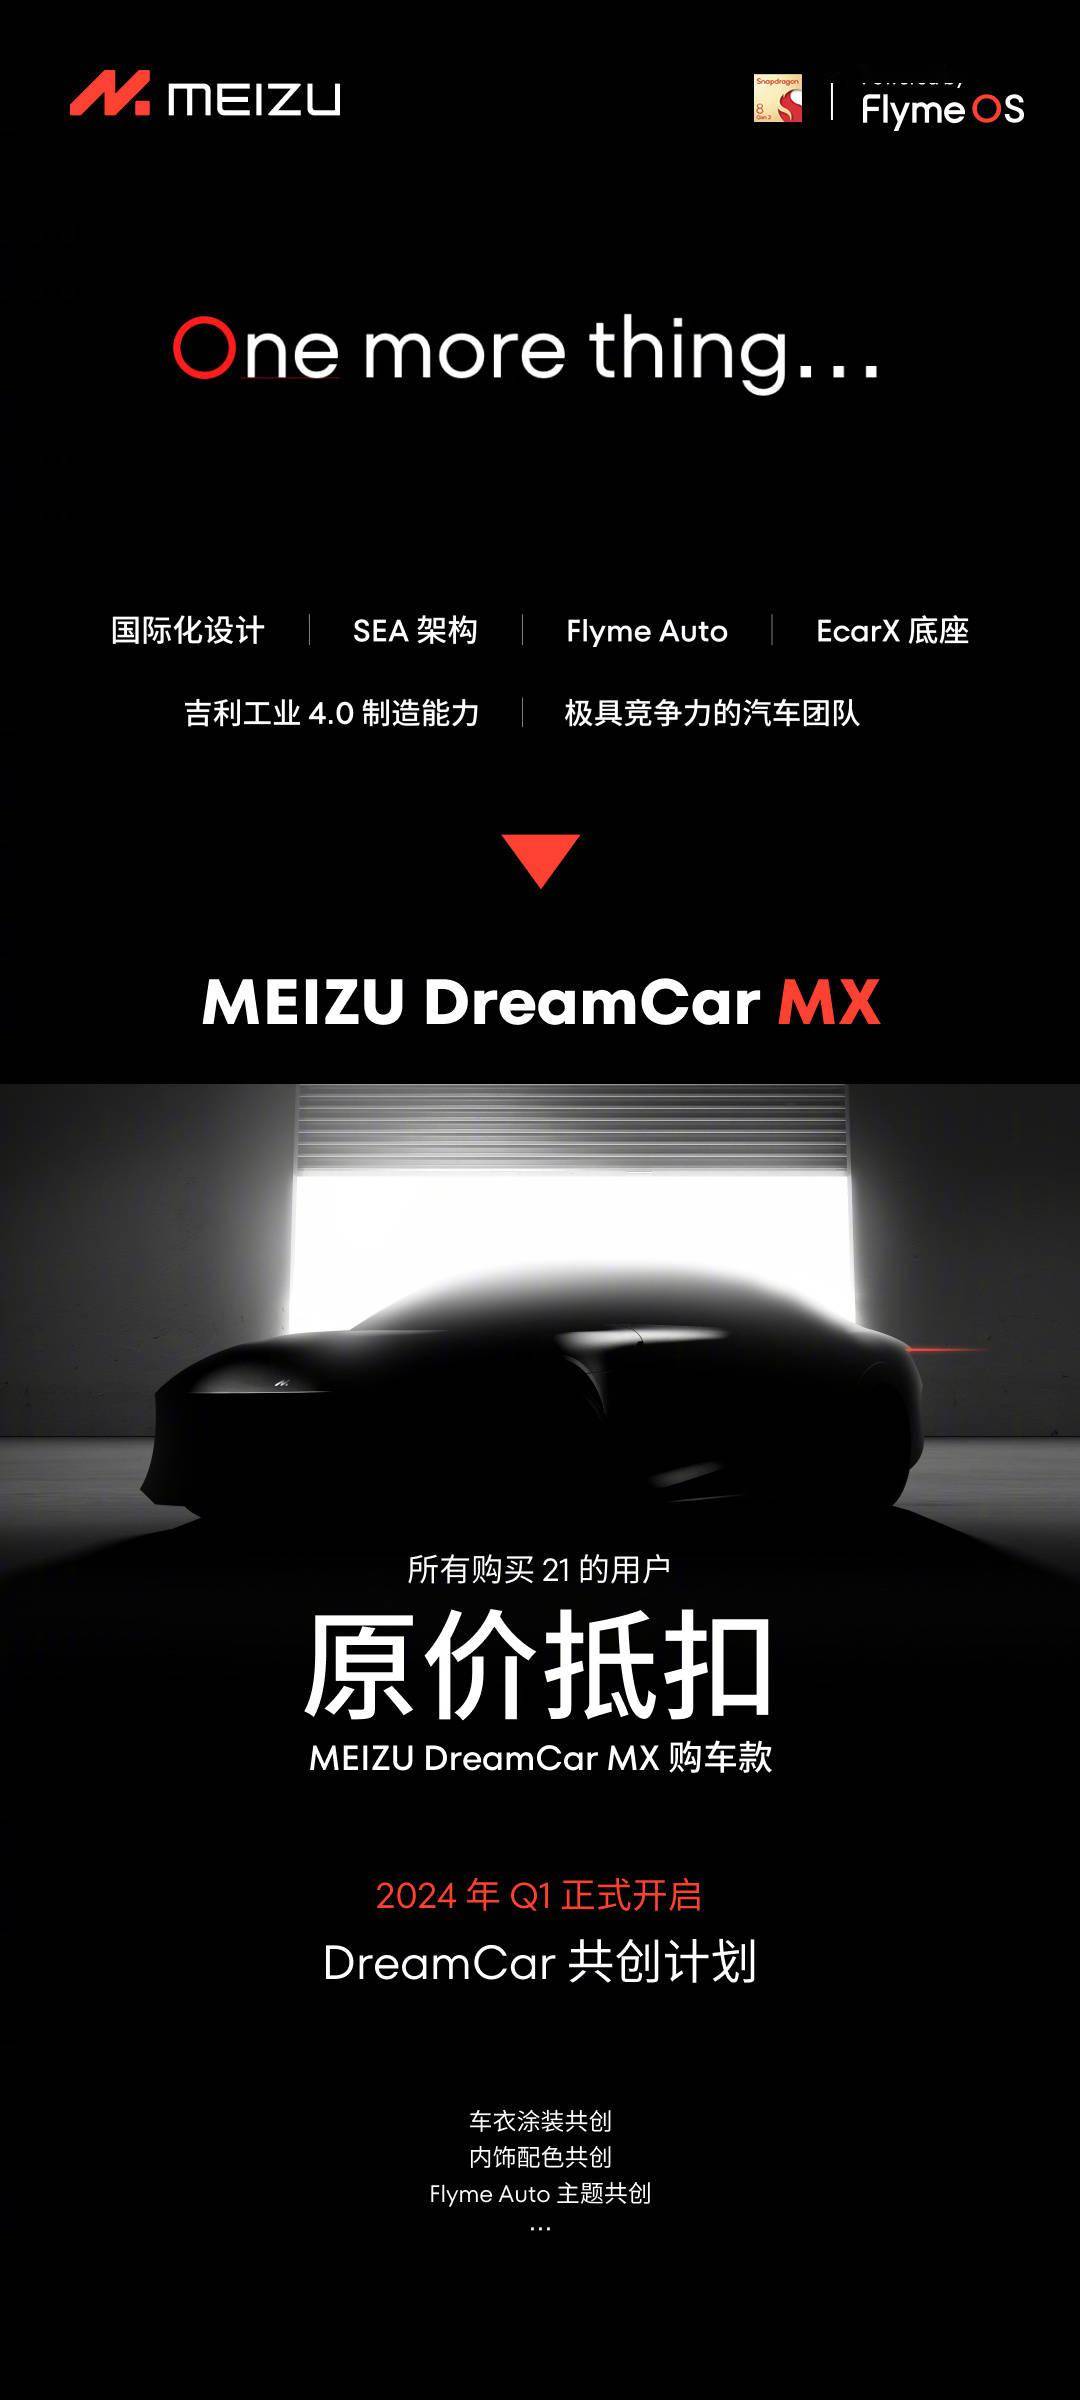 魅族旗下首款车型命名“魅族MX” 推出无界智行开放平台